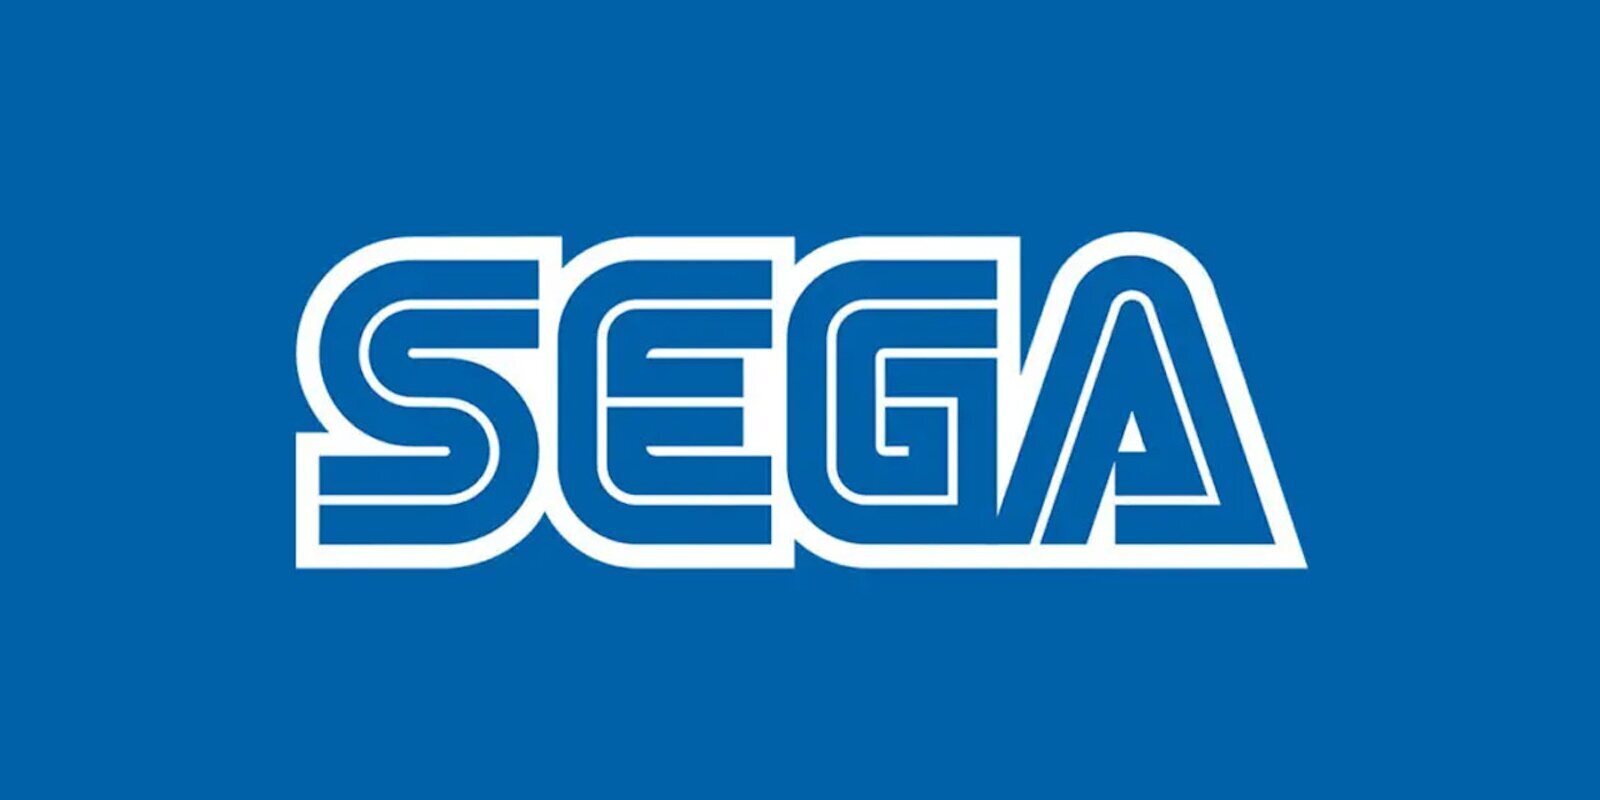 Sega planea lanzar múltiples remakes, remasterizaciones y nuevos juegos durante este año fiscal